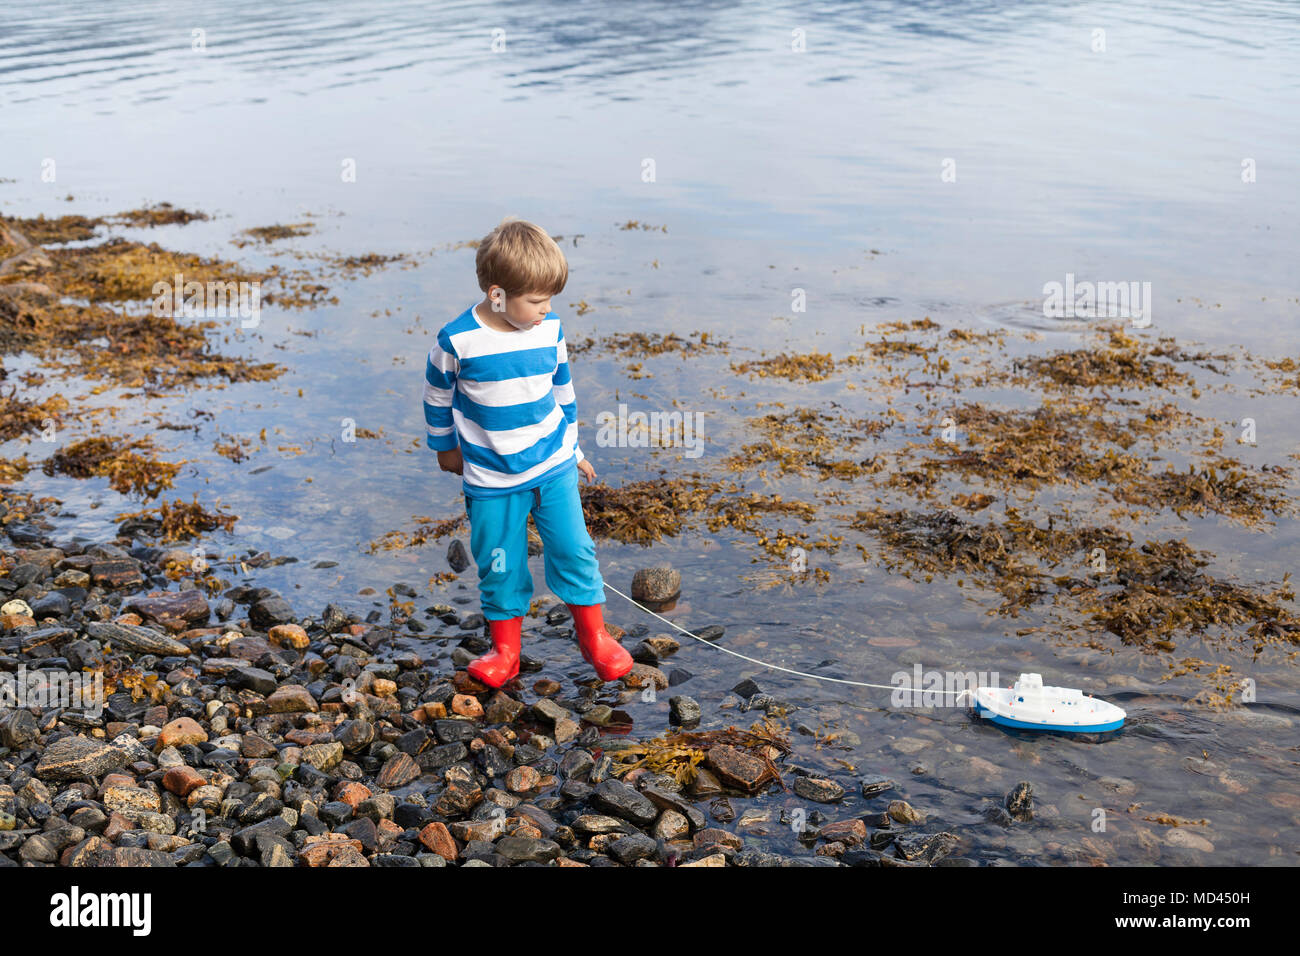 Fiordo Boy en el borde del agua jugando con barco de juguete, Aure, Møre og Romsdal, Noruega Foto de stock